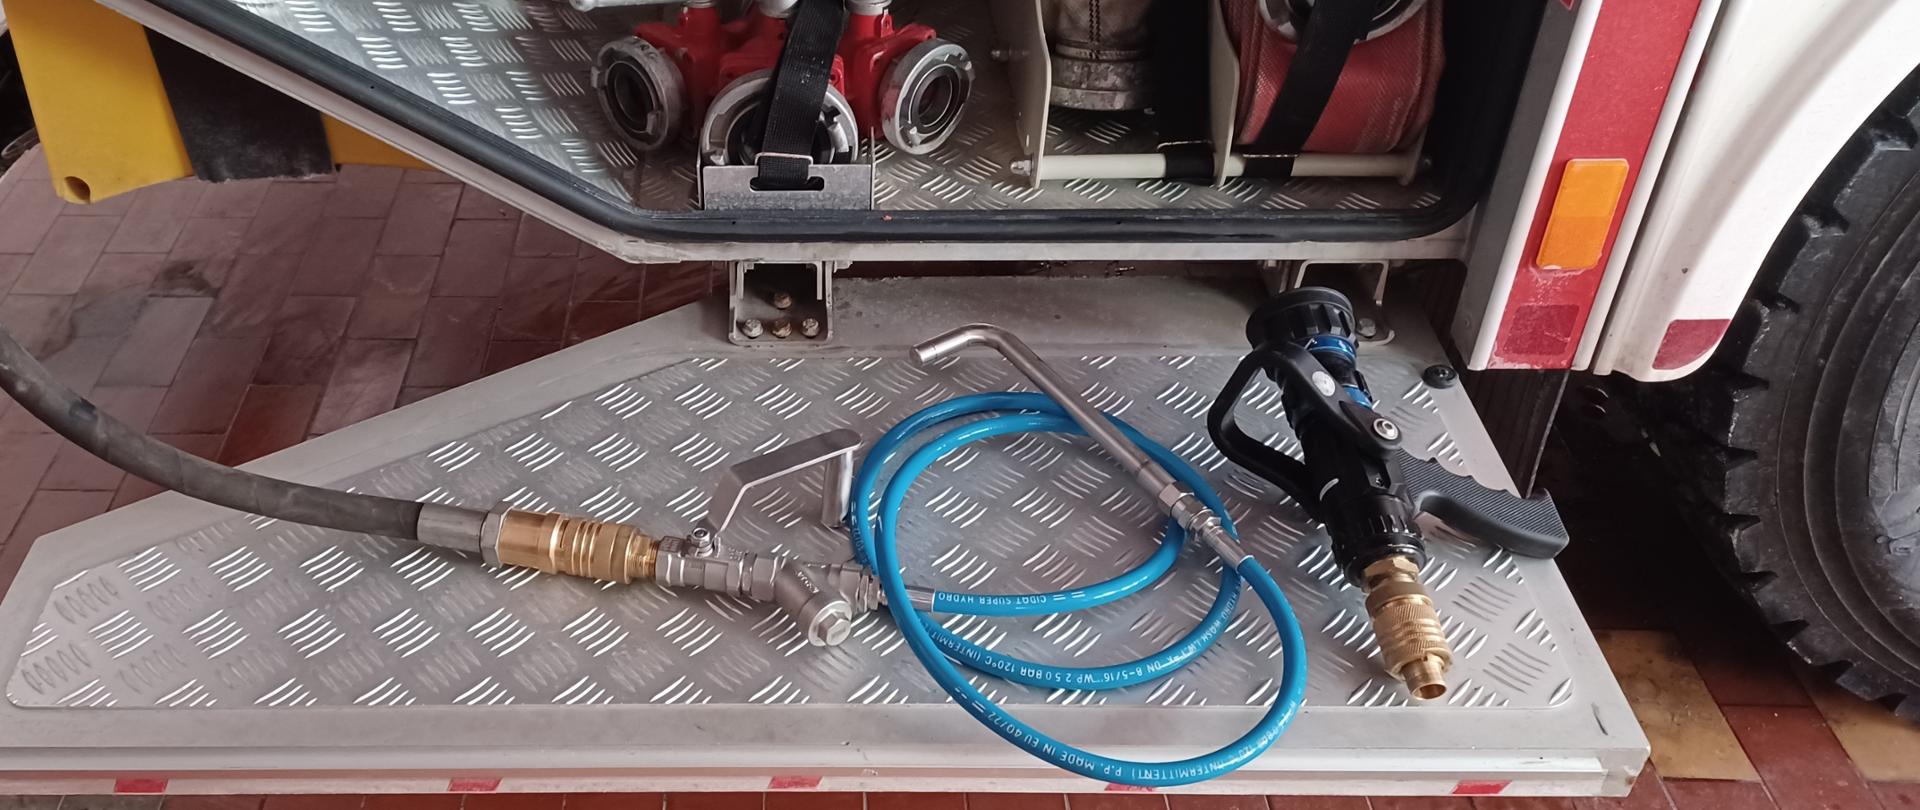 Zdjęcie przedstawia otwarty podest samochodu pożarniczego, którym leżą prądownica i podłączona do linii szybkiego natarcia lanca kominowa. W tle widać wyposażenie zamontowane w samochodzie pożarniczym tj. rozdzielacze, węże.